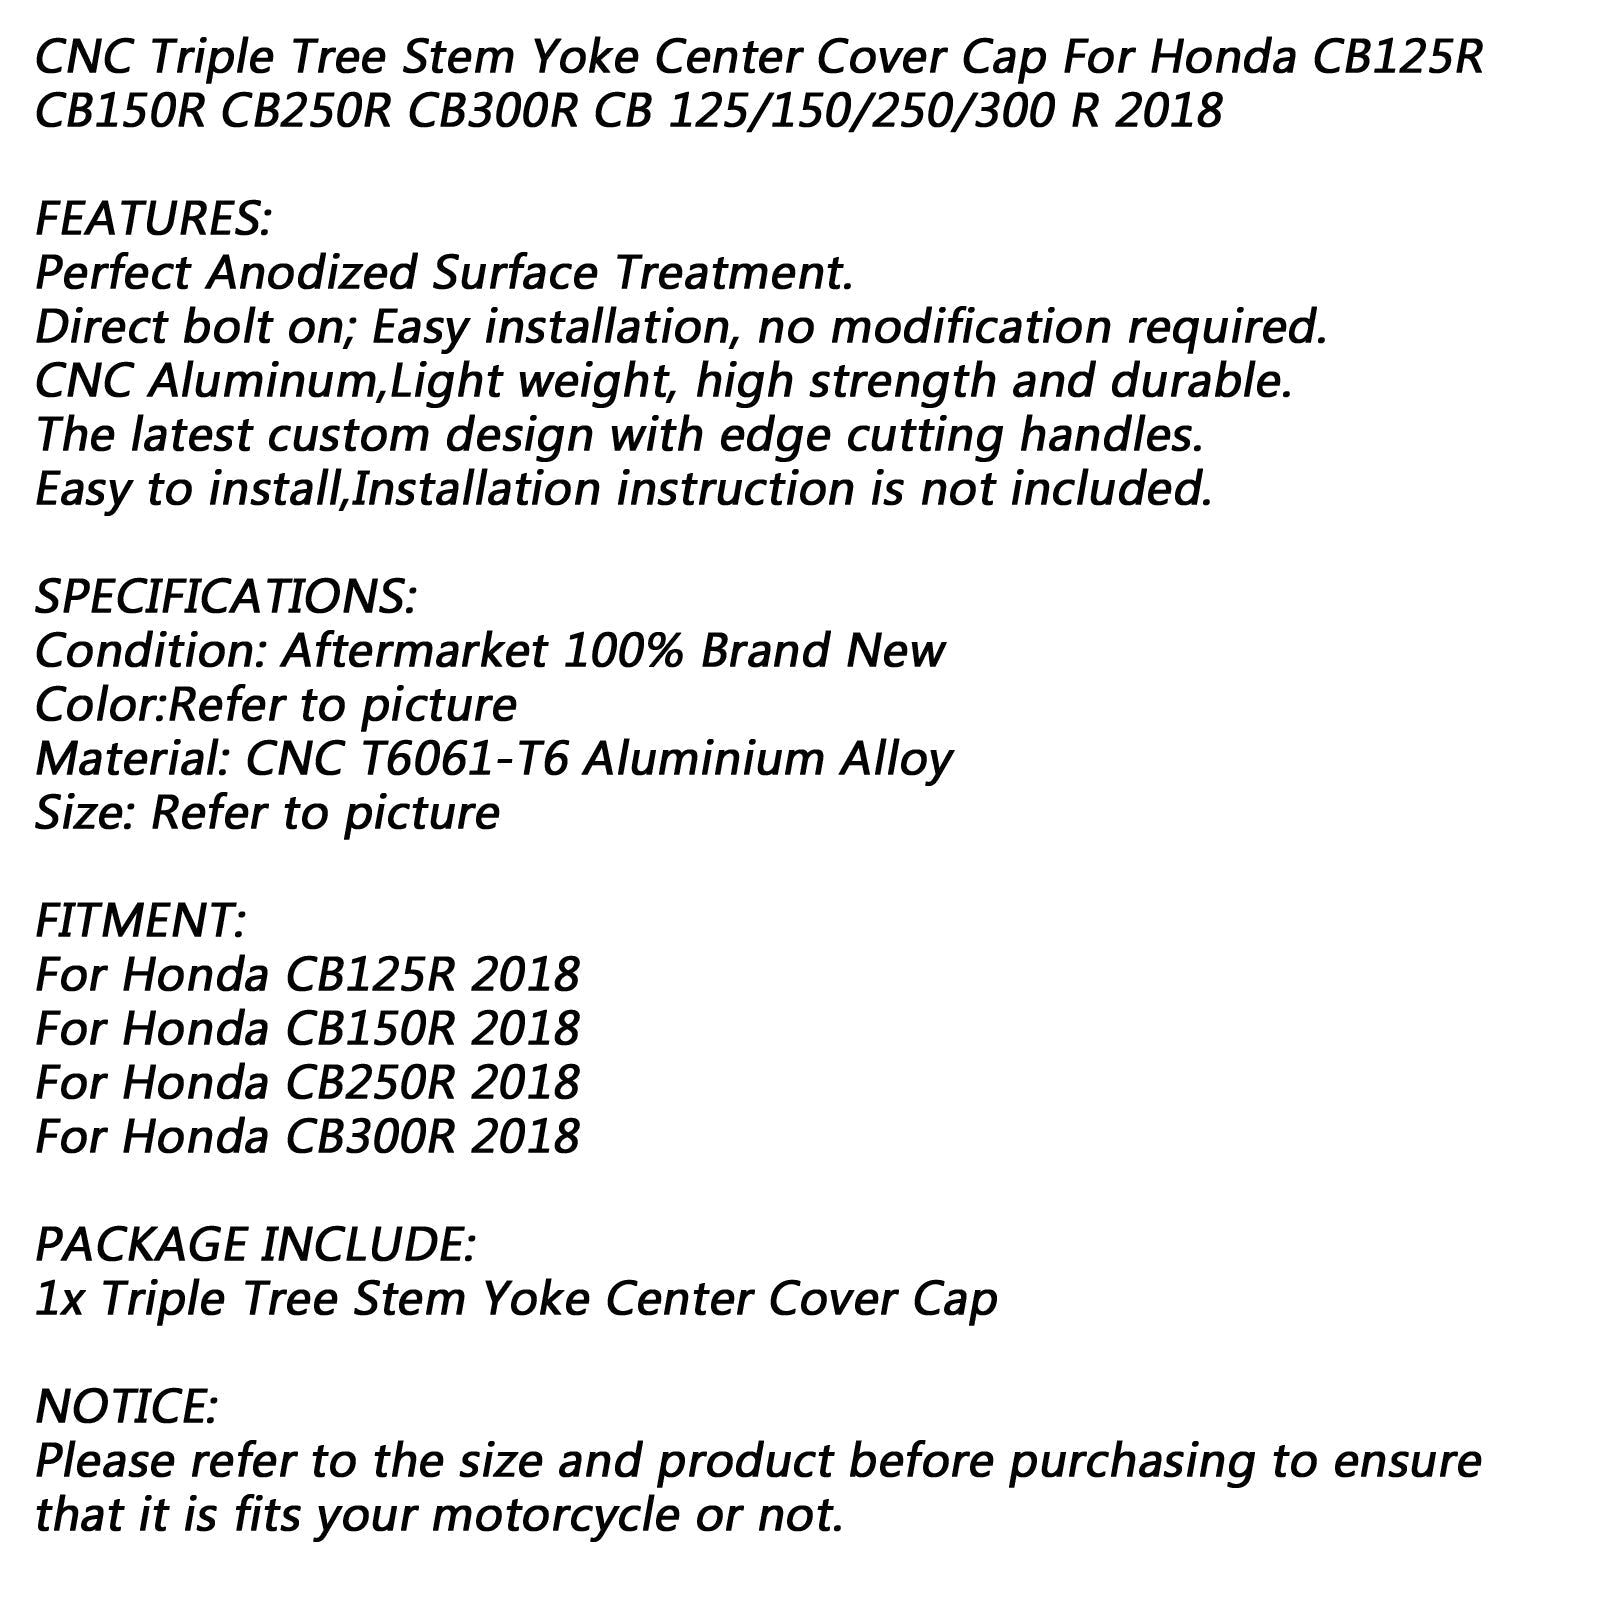 Capuchon central de joug de tige de triple arbre pour Honda CB125R CB150R CB250R CB300R 18 générique